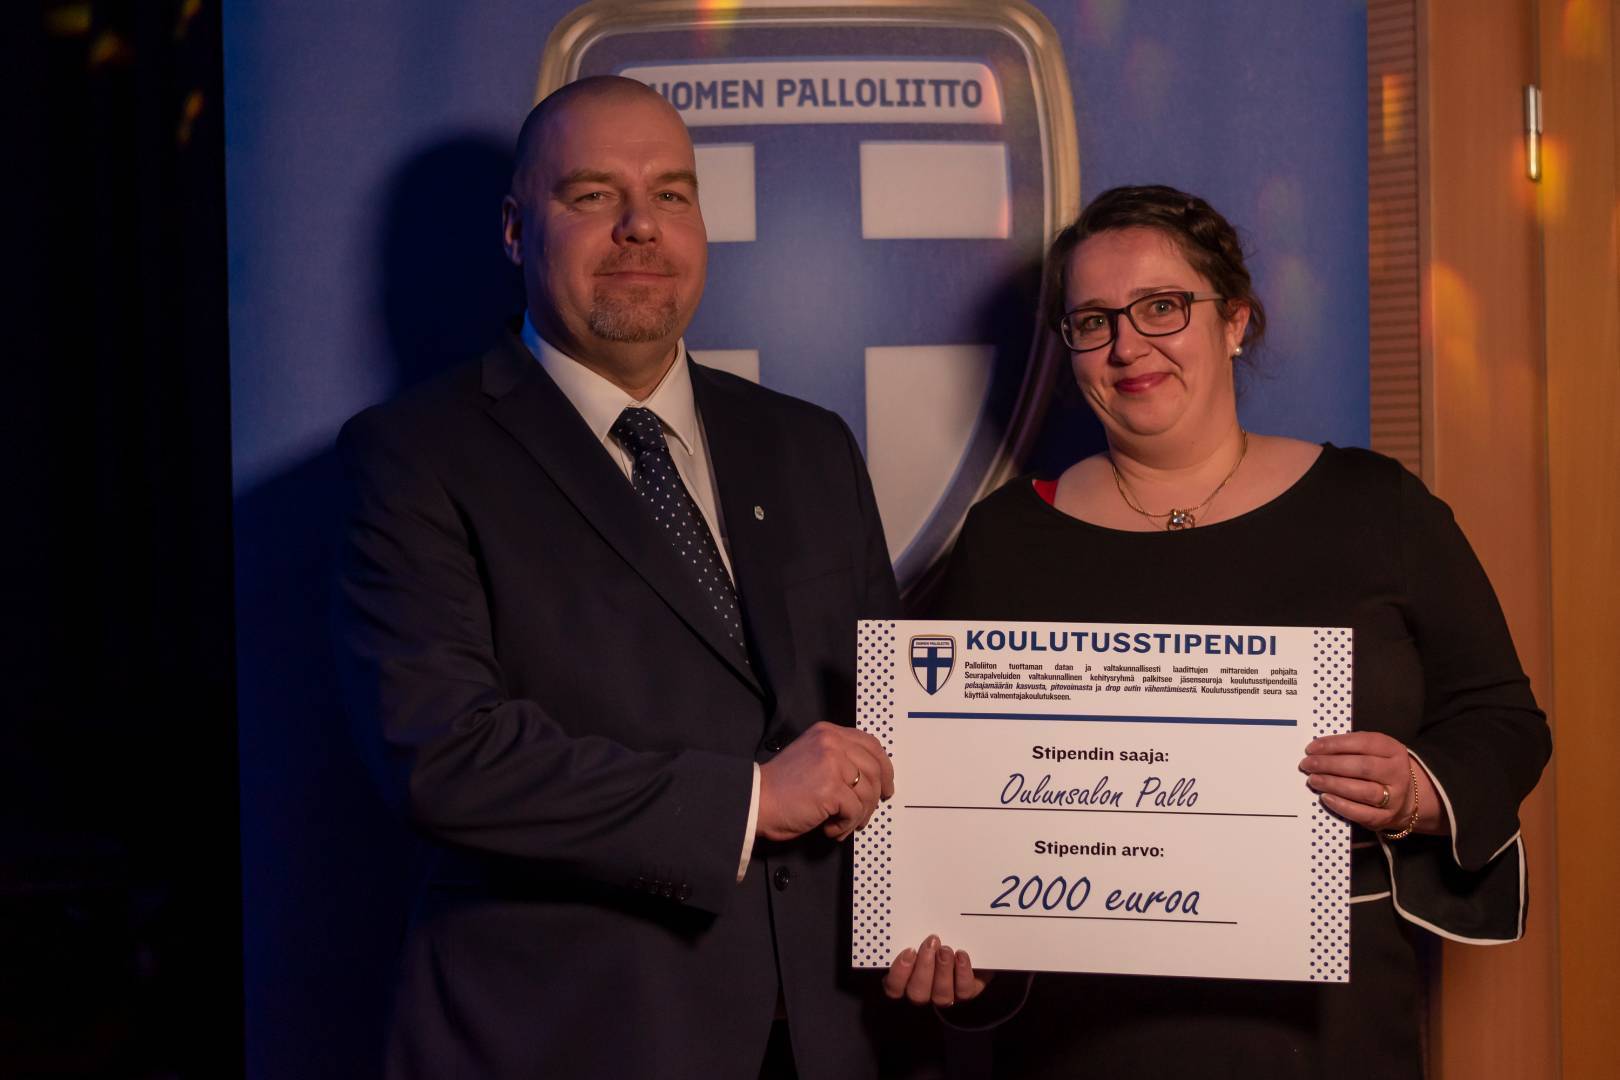 Oulunsalon Pallo palkittiin Palloliiton Pohjoisen alueen Palkintogaalassa Respect palkinnolla